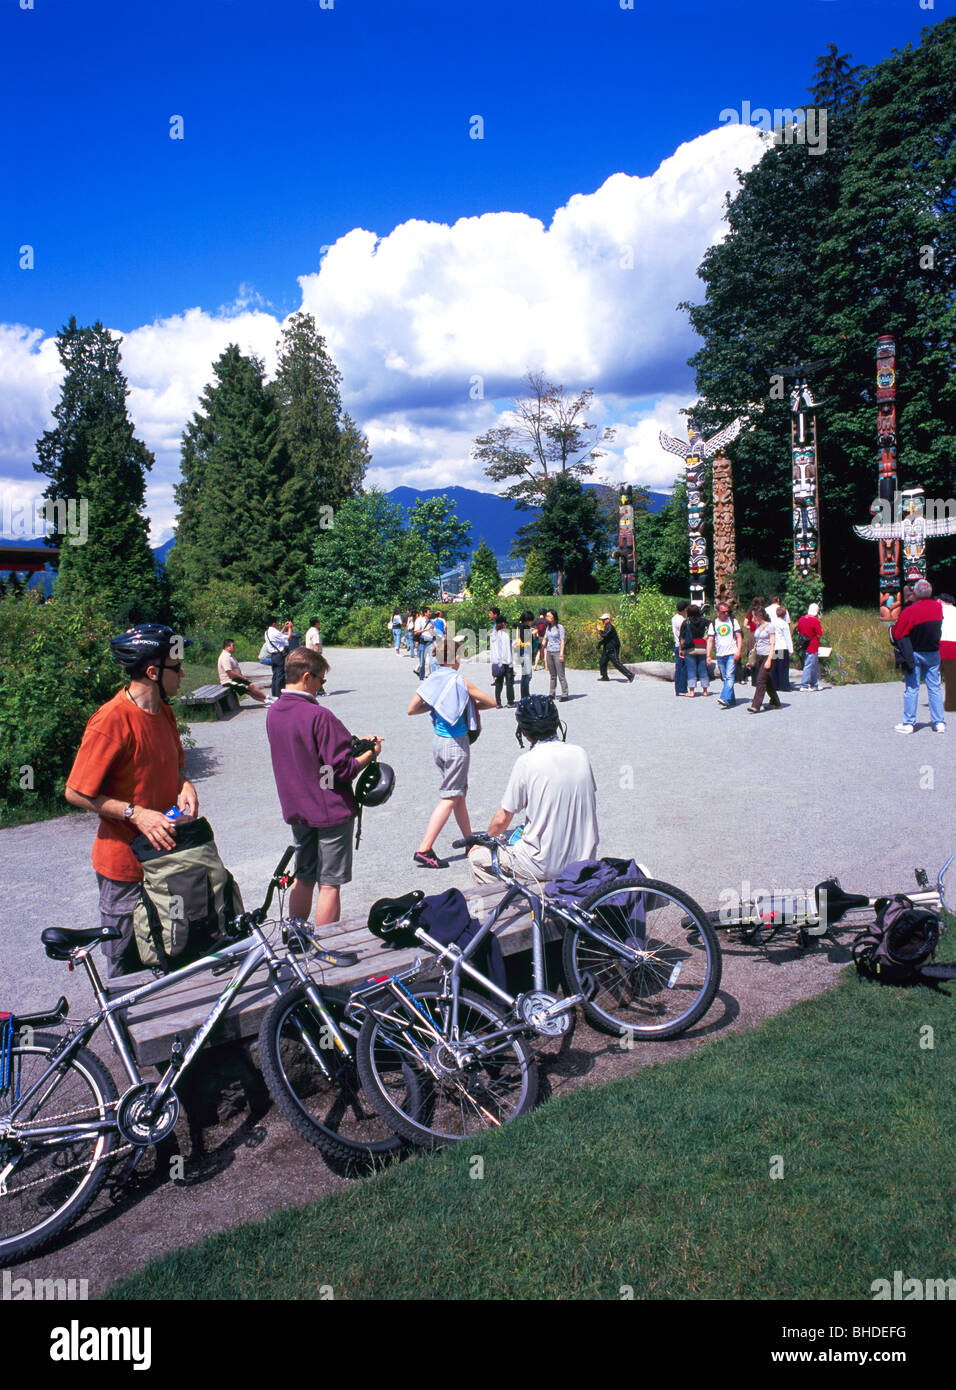 Totempfähle der Stanley Park, Vancouver, BC, Britisch-Kolumbien, Kanada - Touristen in Brockton Point Totems, Sommer Stockfoto